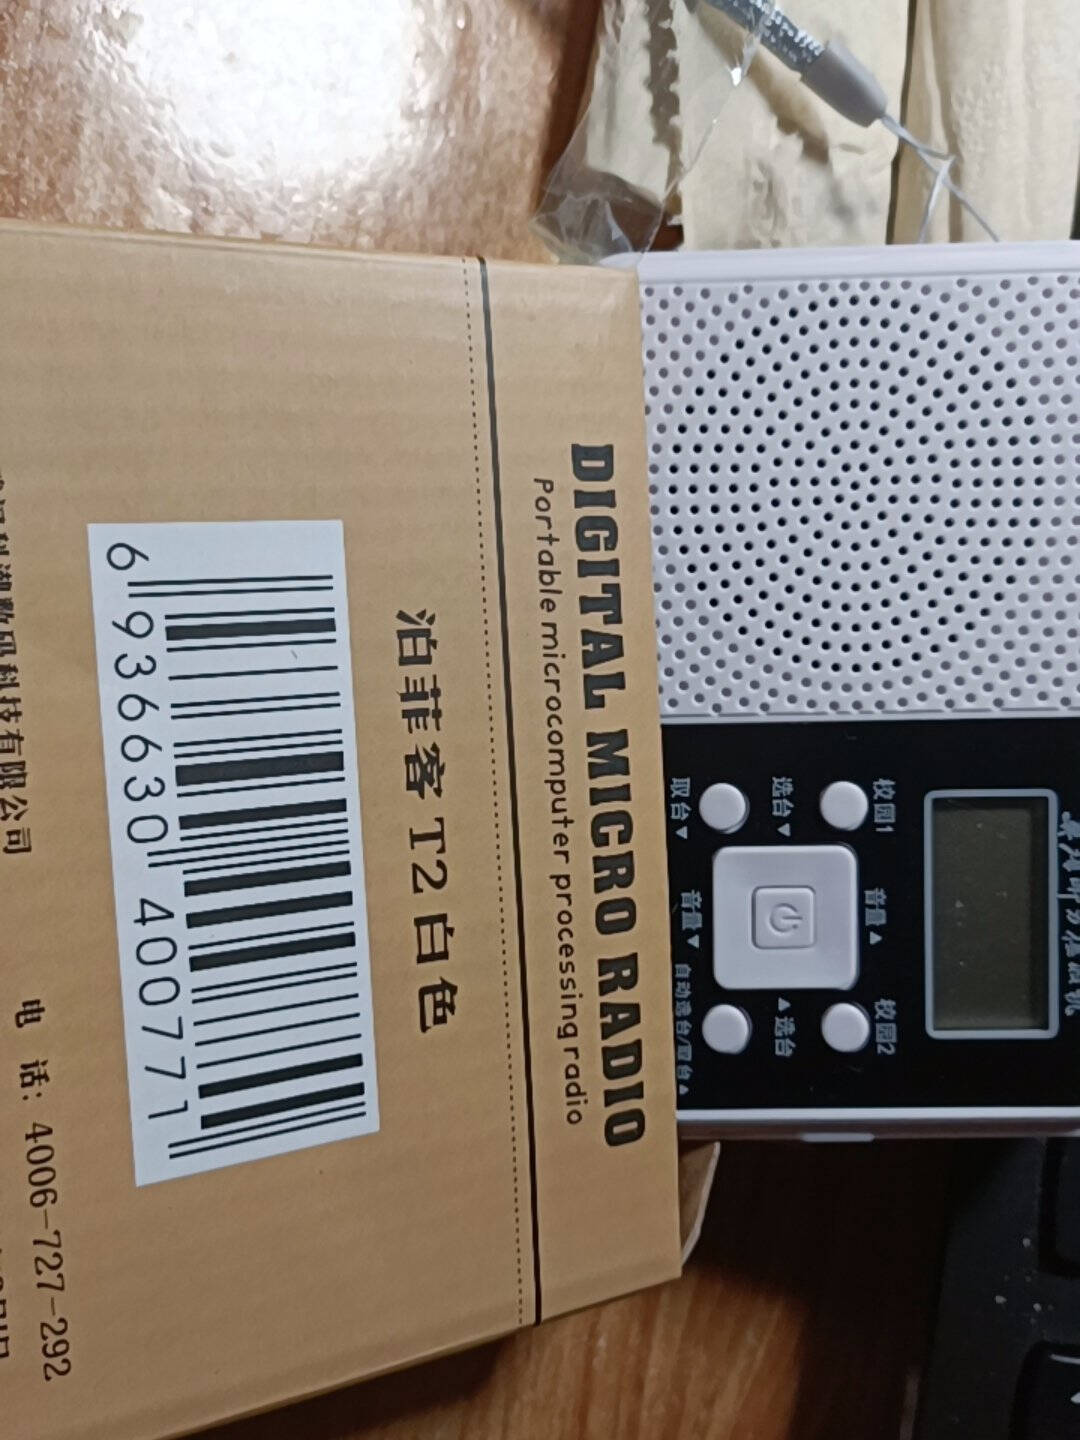 泊菲客T2大学英语听力考试专用学生收音机四六级46级四级46级等级外语考试用调频校园考试用的白色收音机+送五号电池